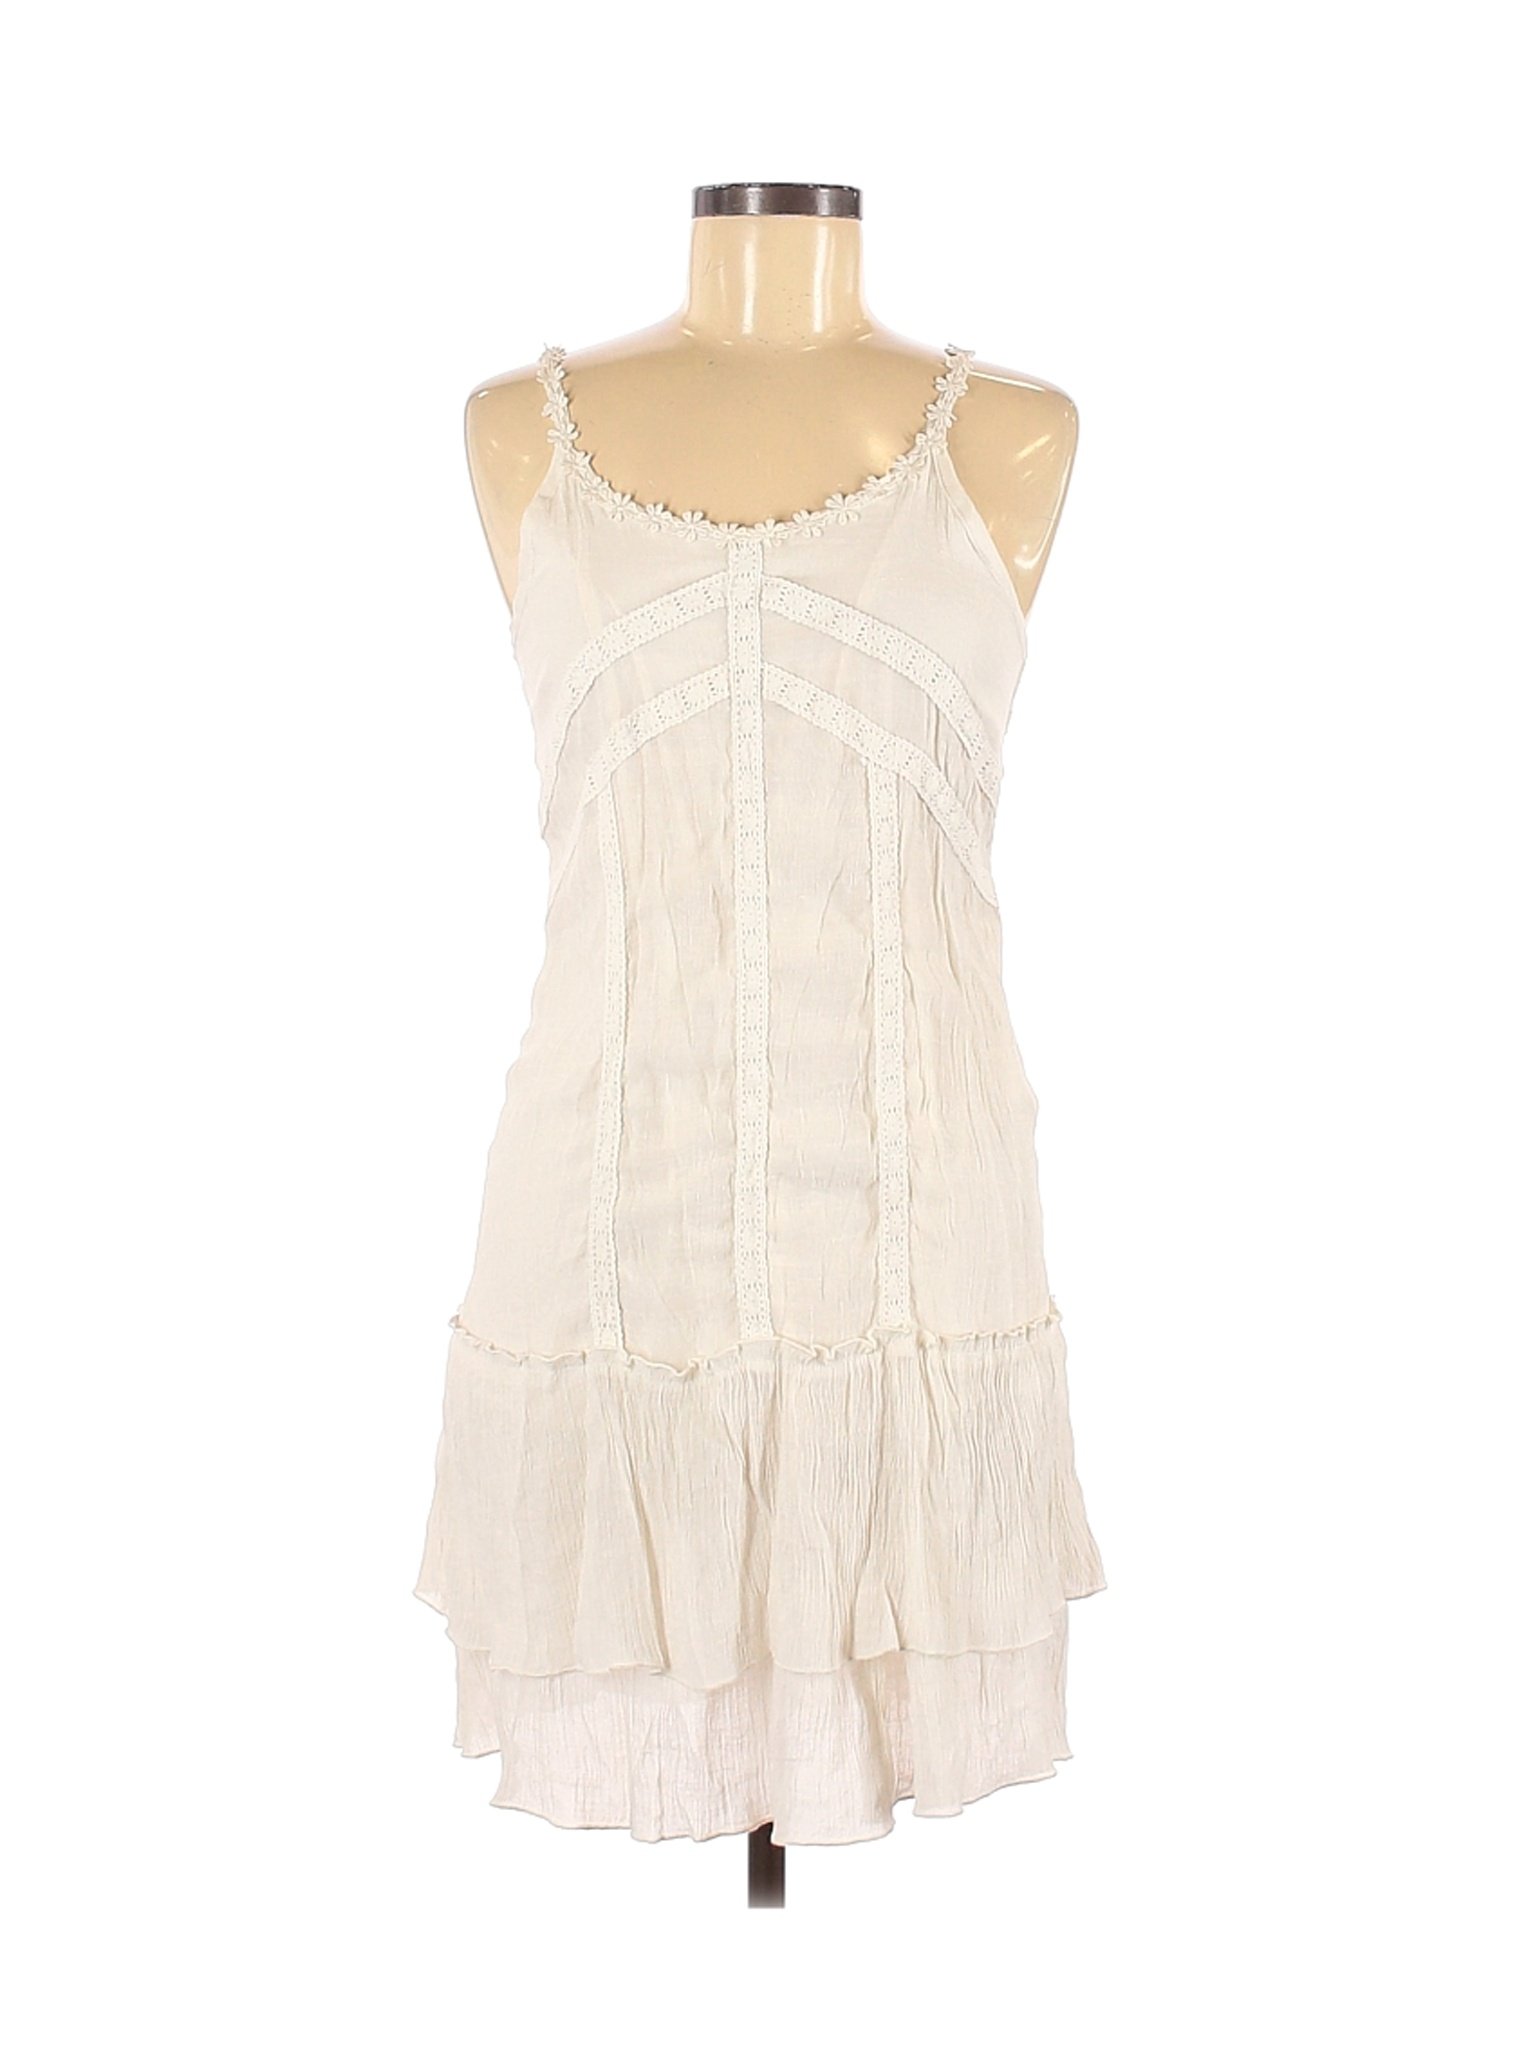 J Gee Women Ivory Casual Dress M | eBay